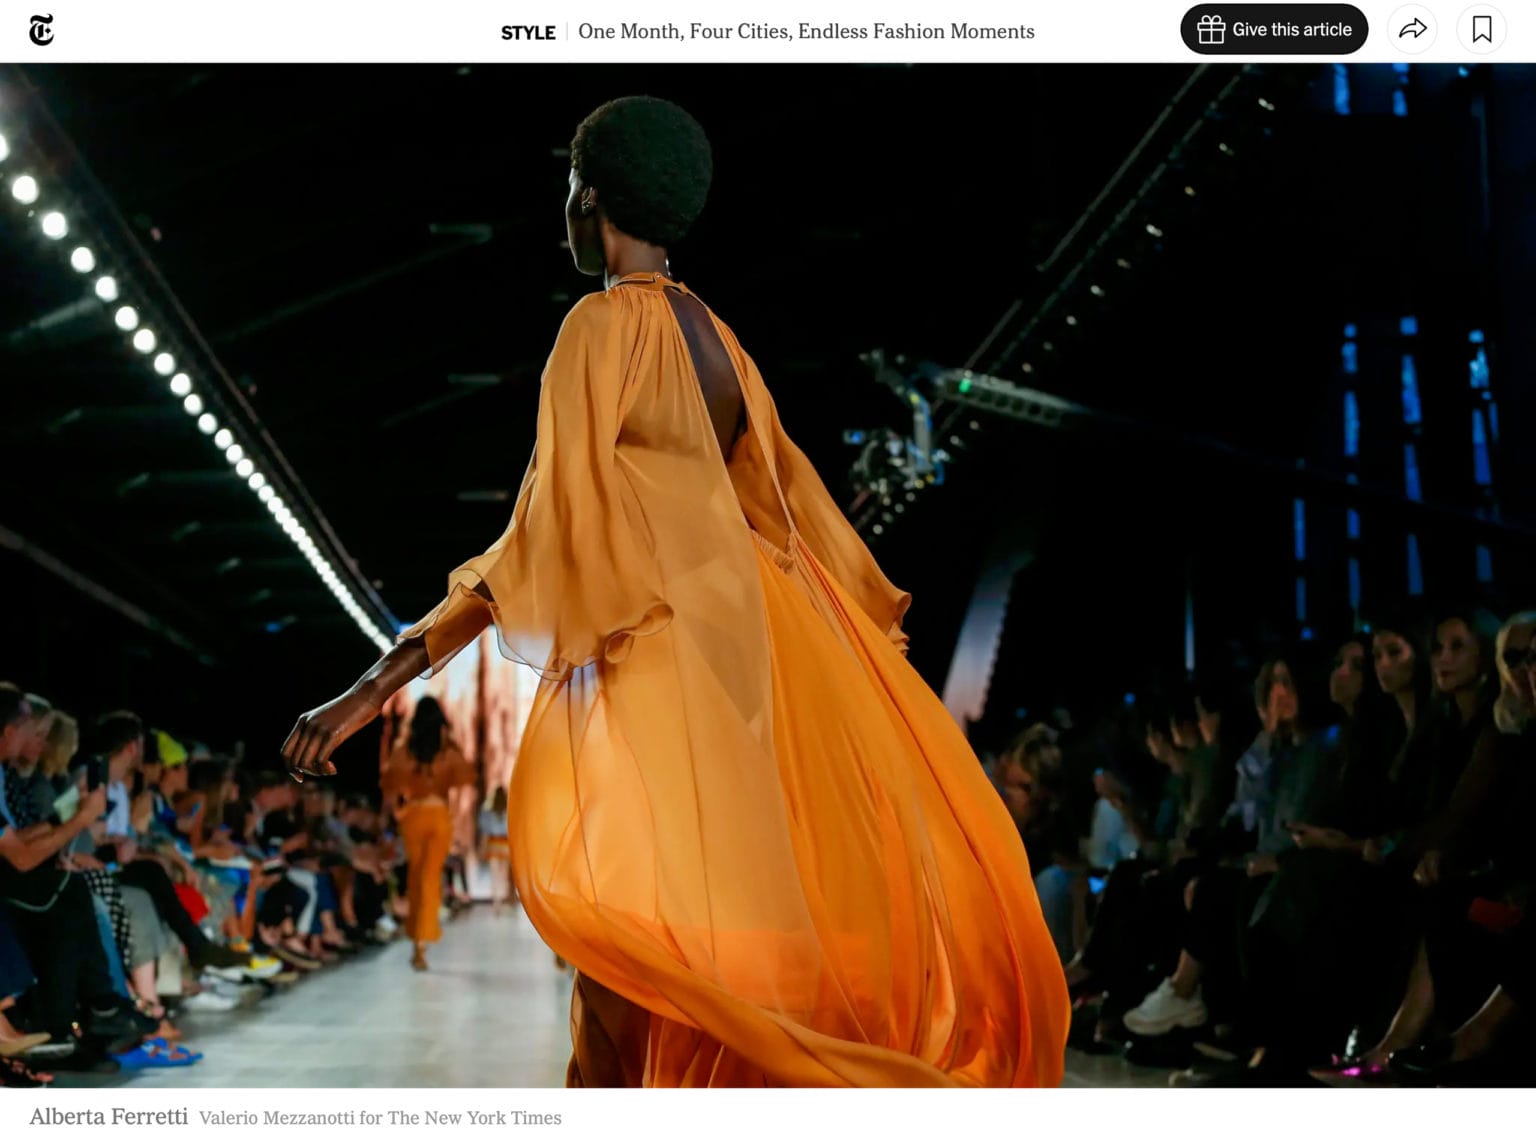 Alberta Ferretti Fashion Show, Photo by Valerio Mezzanotti for The New York Times